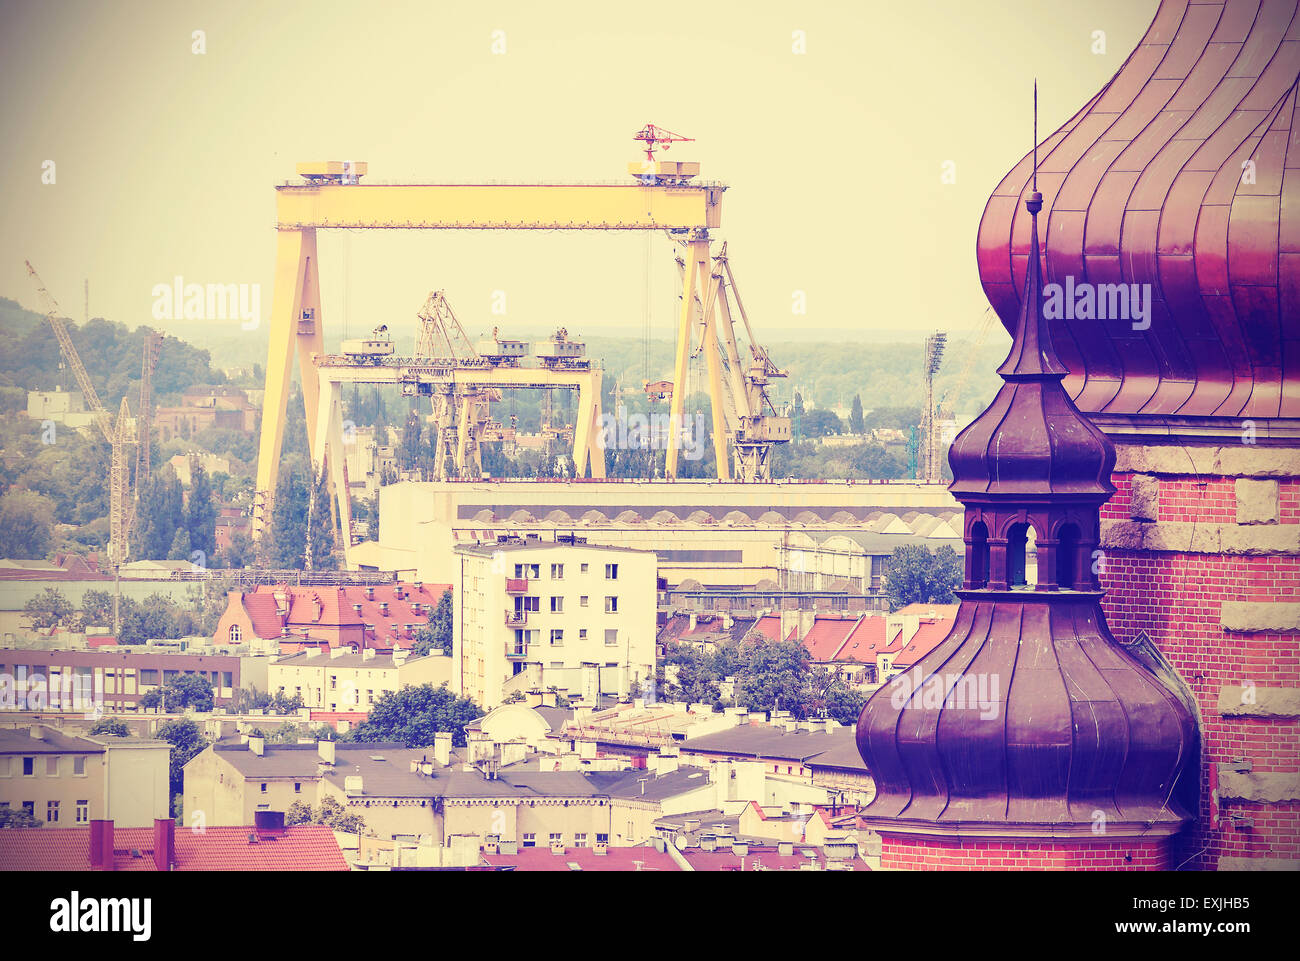 Carte postale rétro de Szczecin, bâtiment historique et contexte industriel, la Pologne. Banque D'Images